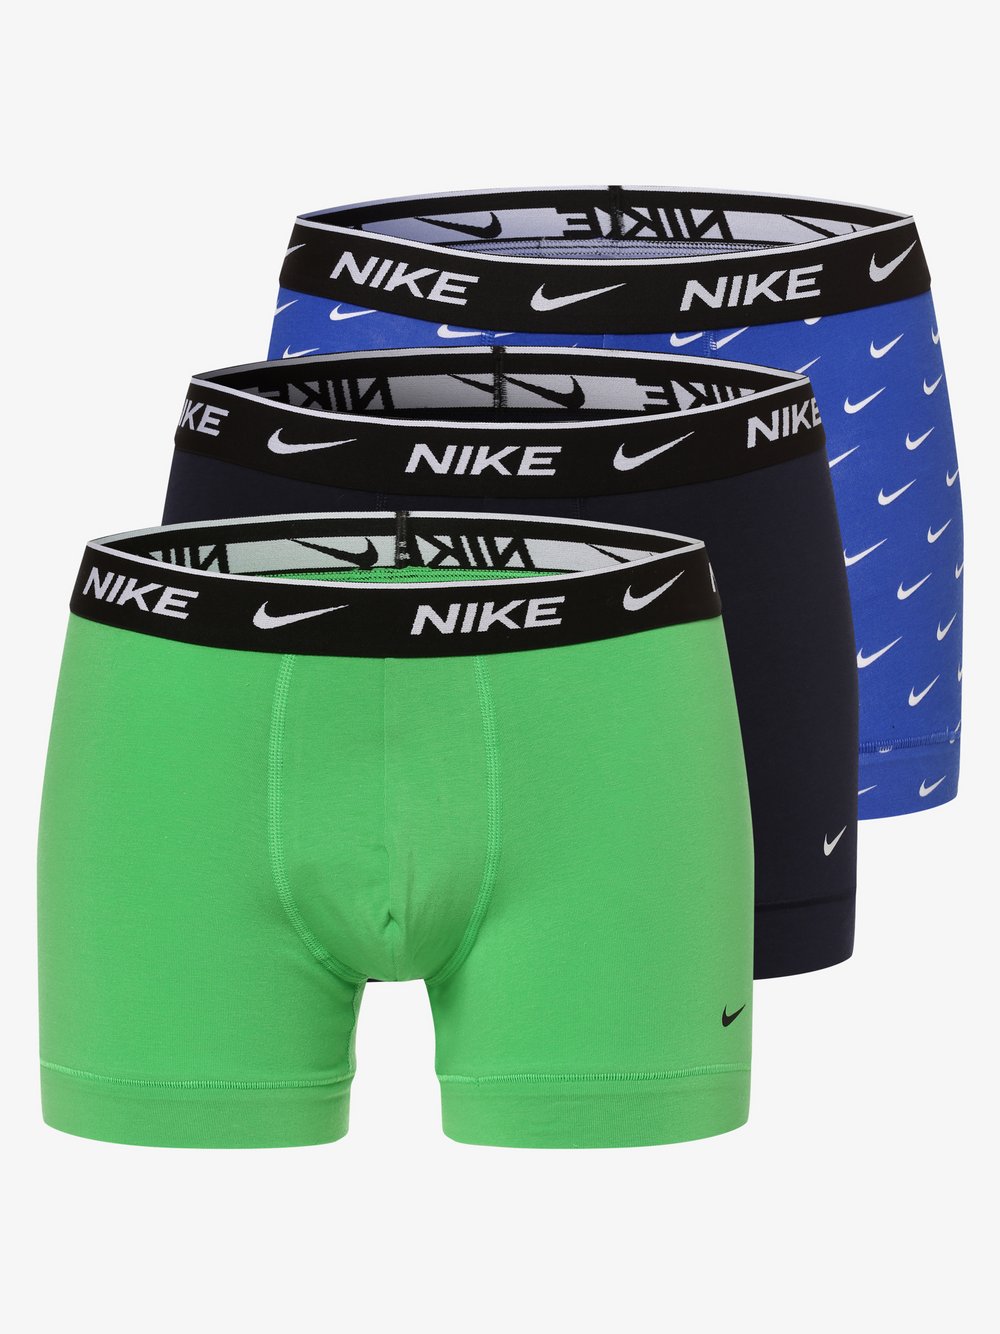 Nike - Obcisłe bokserki męskie pakowane po 3 szt., niebieski